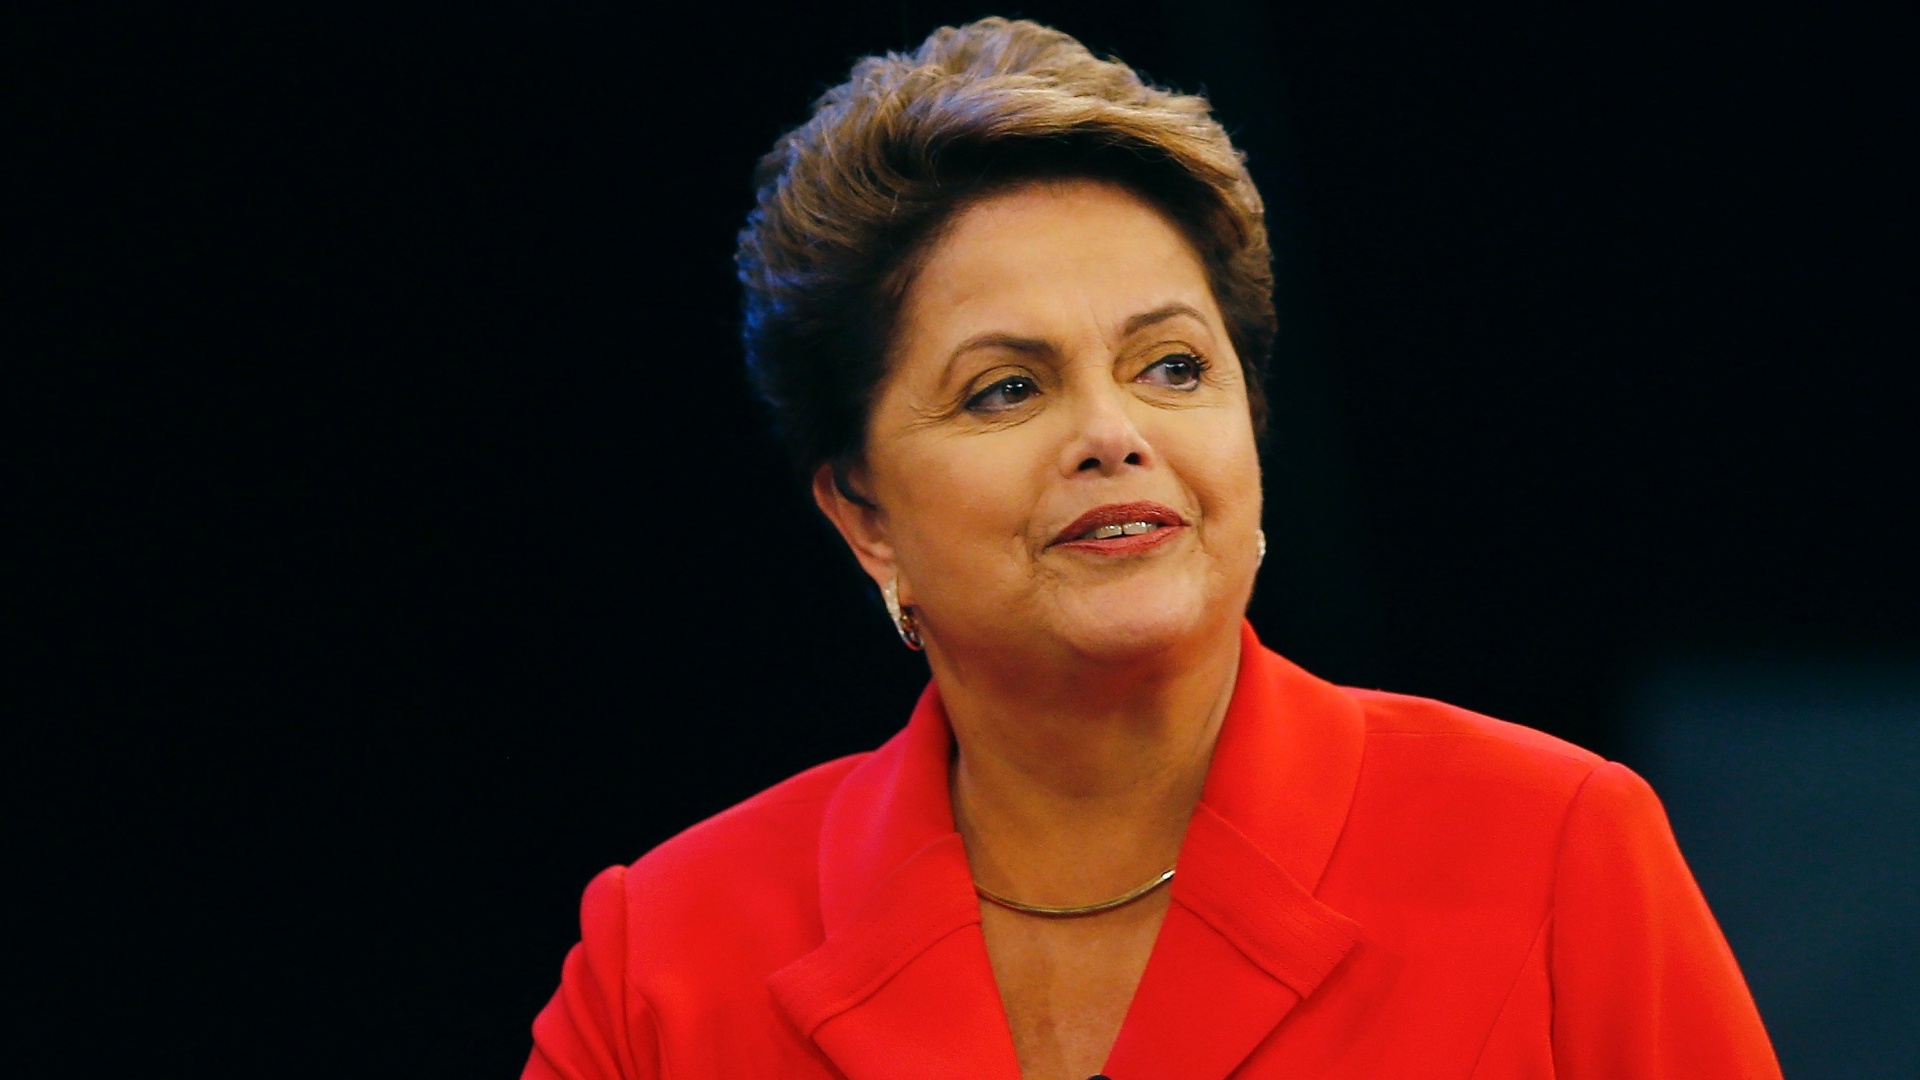 O Brasil tem os braços abertos para acolher refugiados, garante Dilma